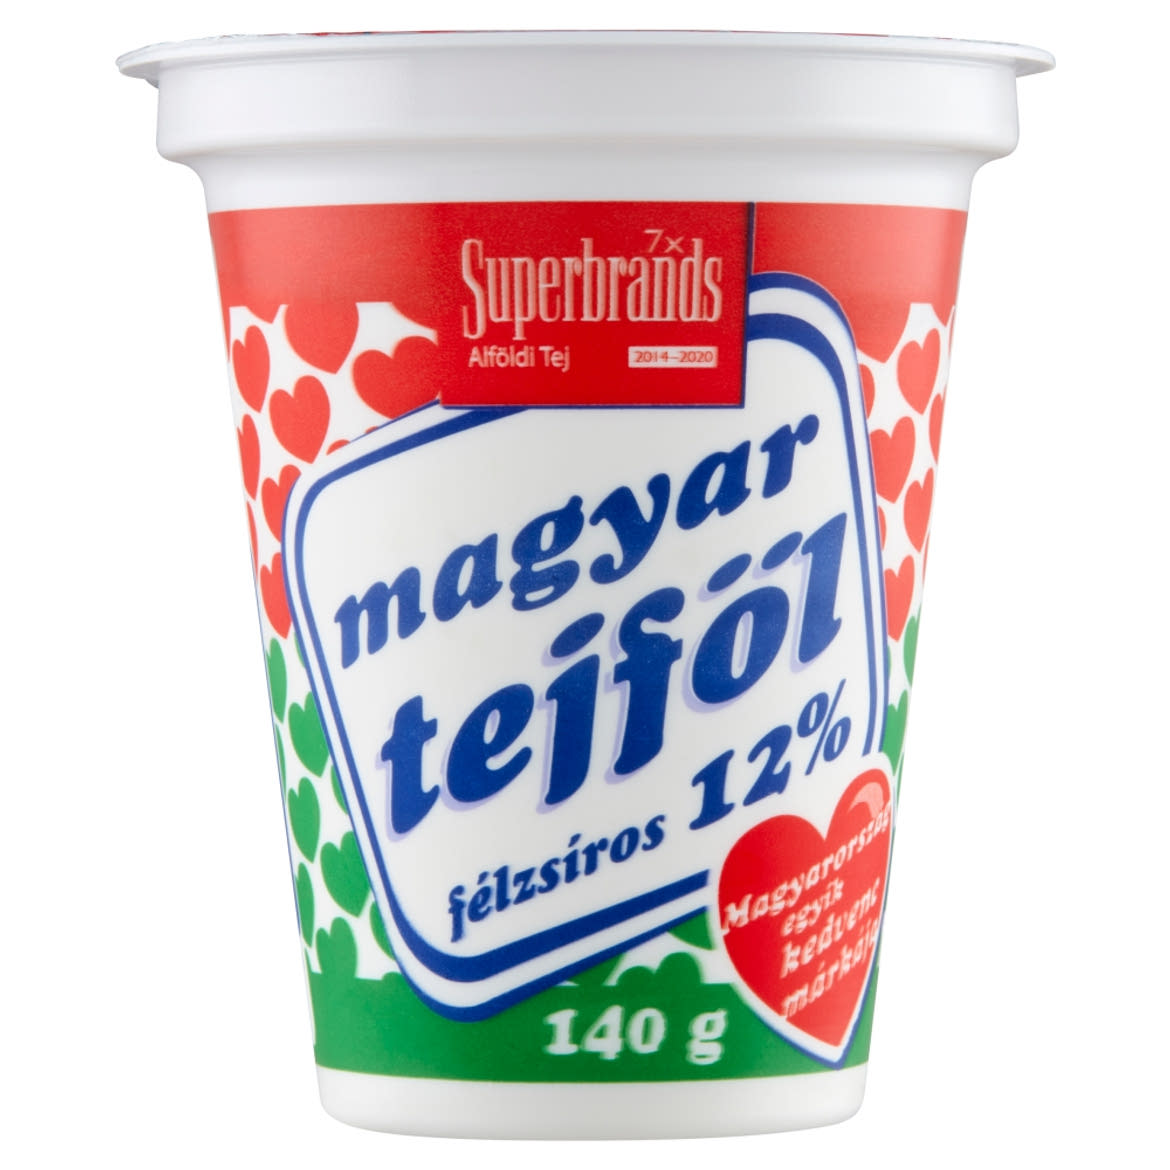 Magyar Tejföl 12%-os félzsíros tejföl